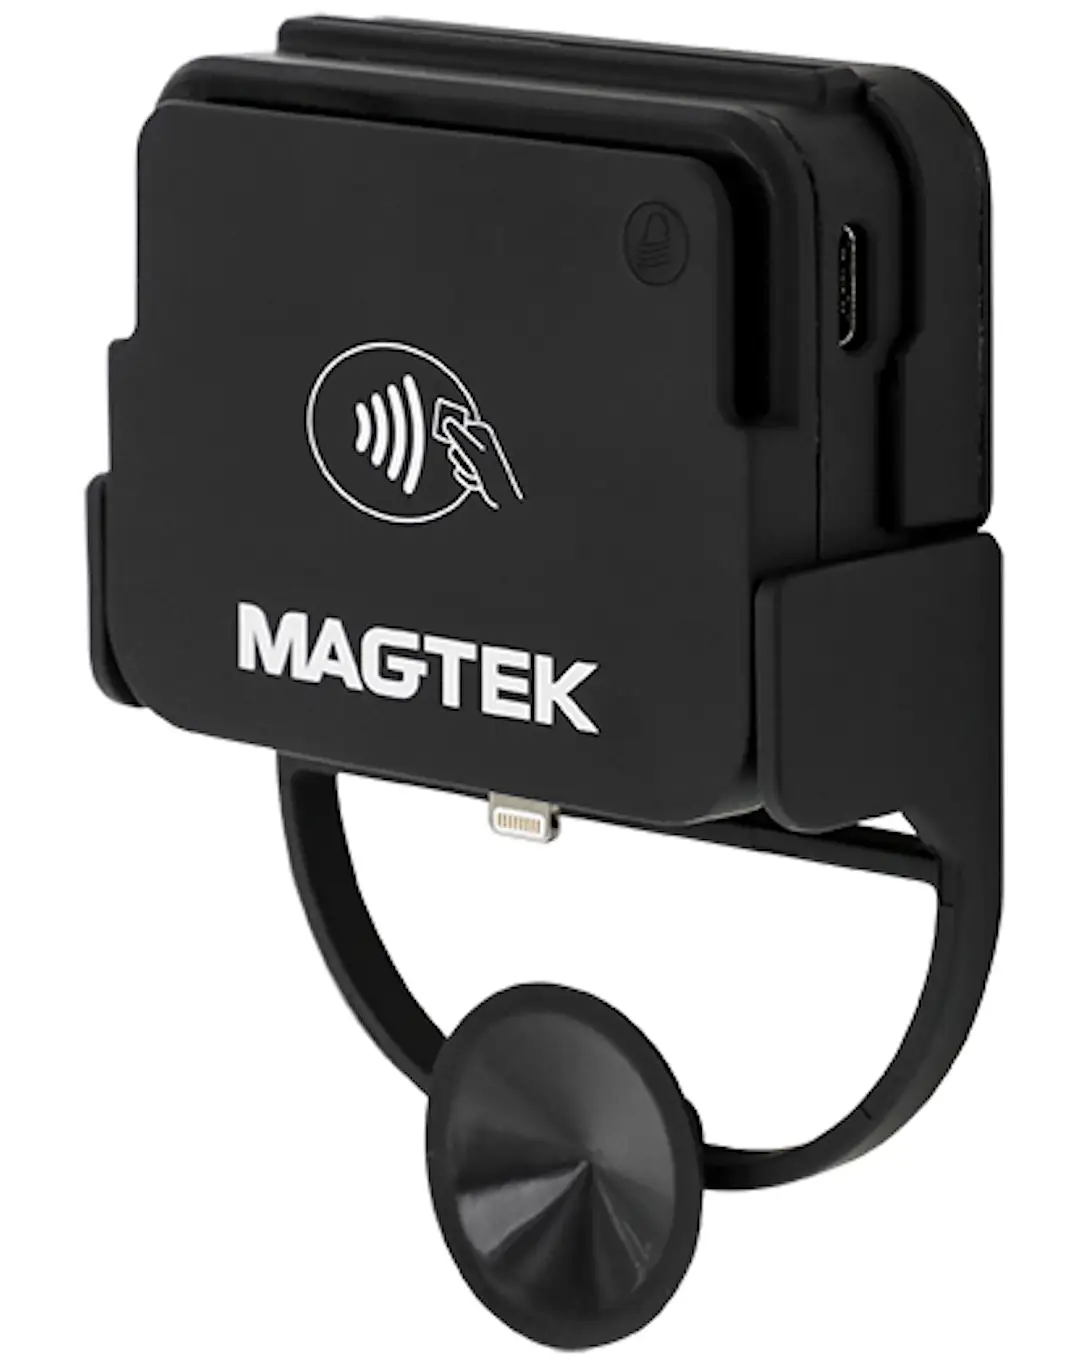 MagTek payment hardware